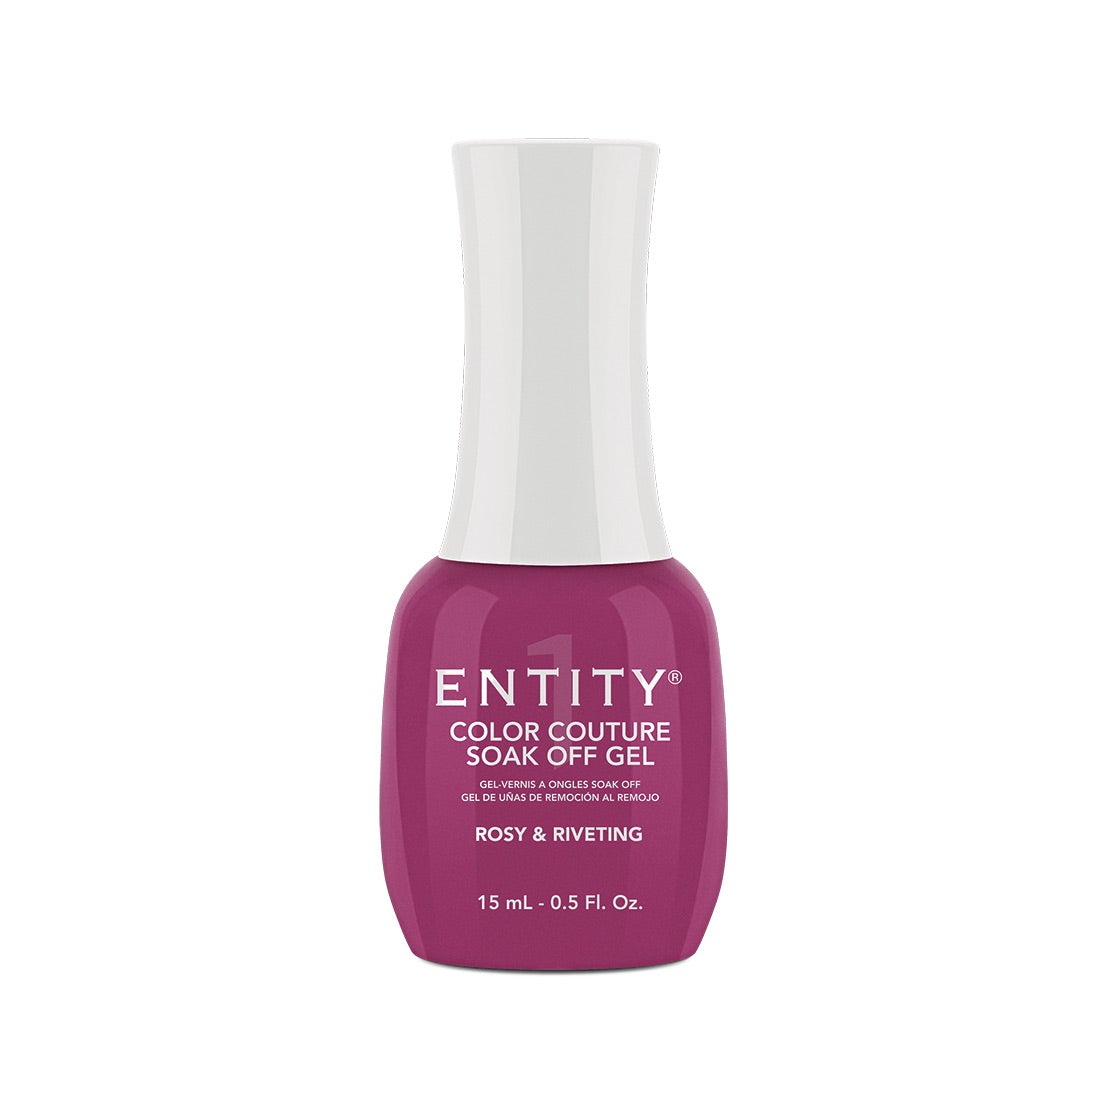 Entity Gel Soak Off - Rosy & Riveting 15 mL/0.5 Fl. Oz